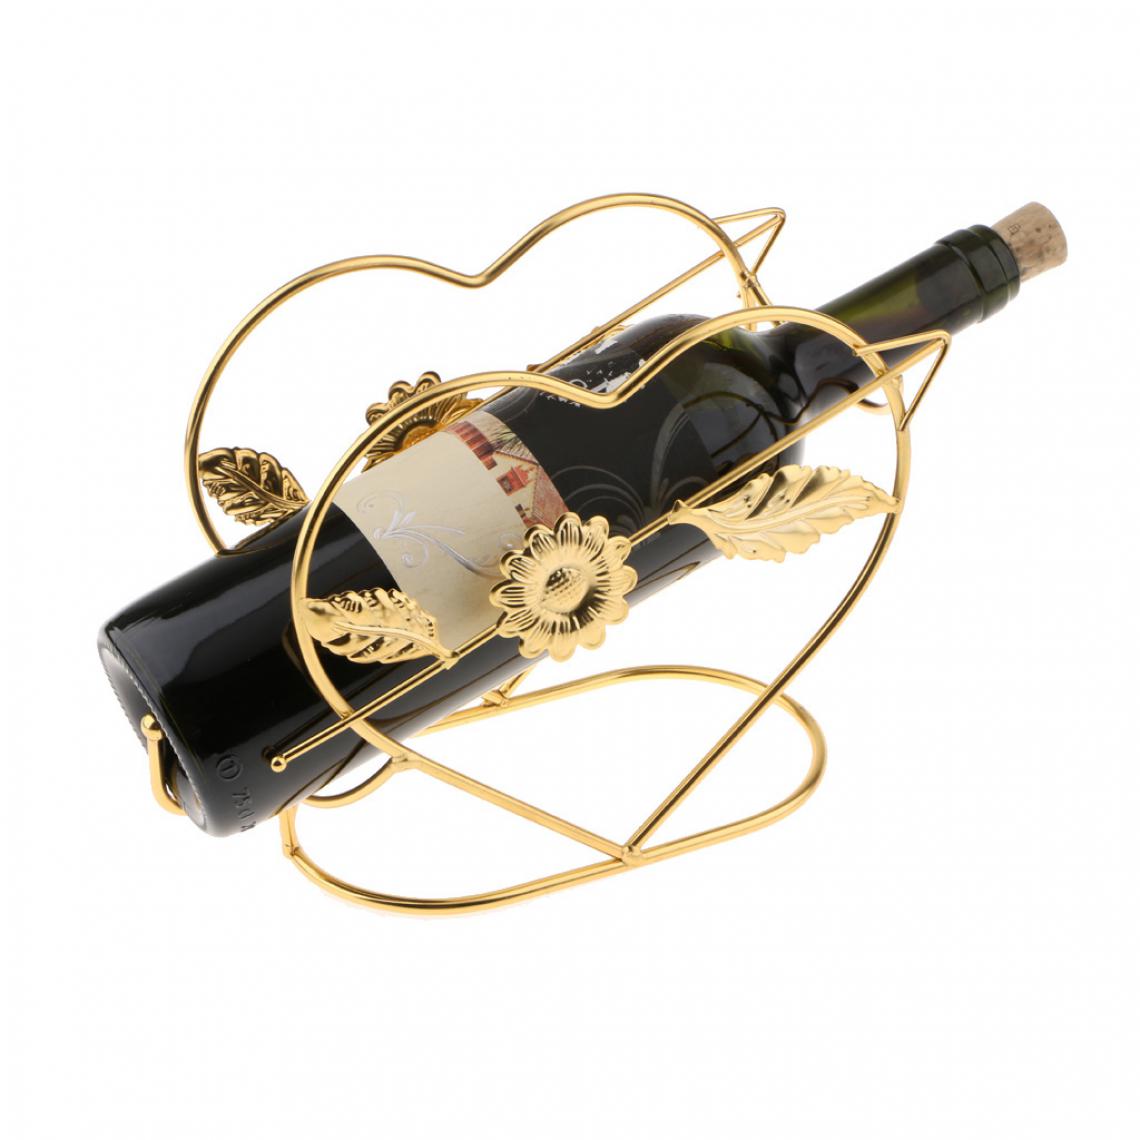 marque generique - Conception de coeur en métal bouteille de vin rouge magasin de bouteille de champagne stockage doré - Etagères